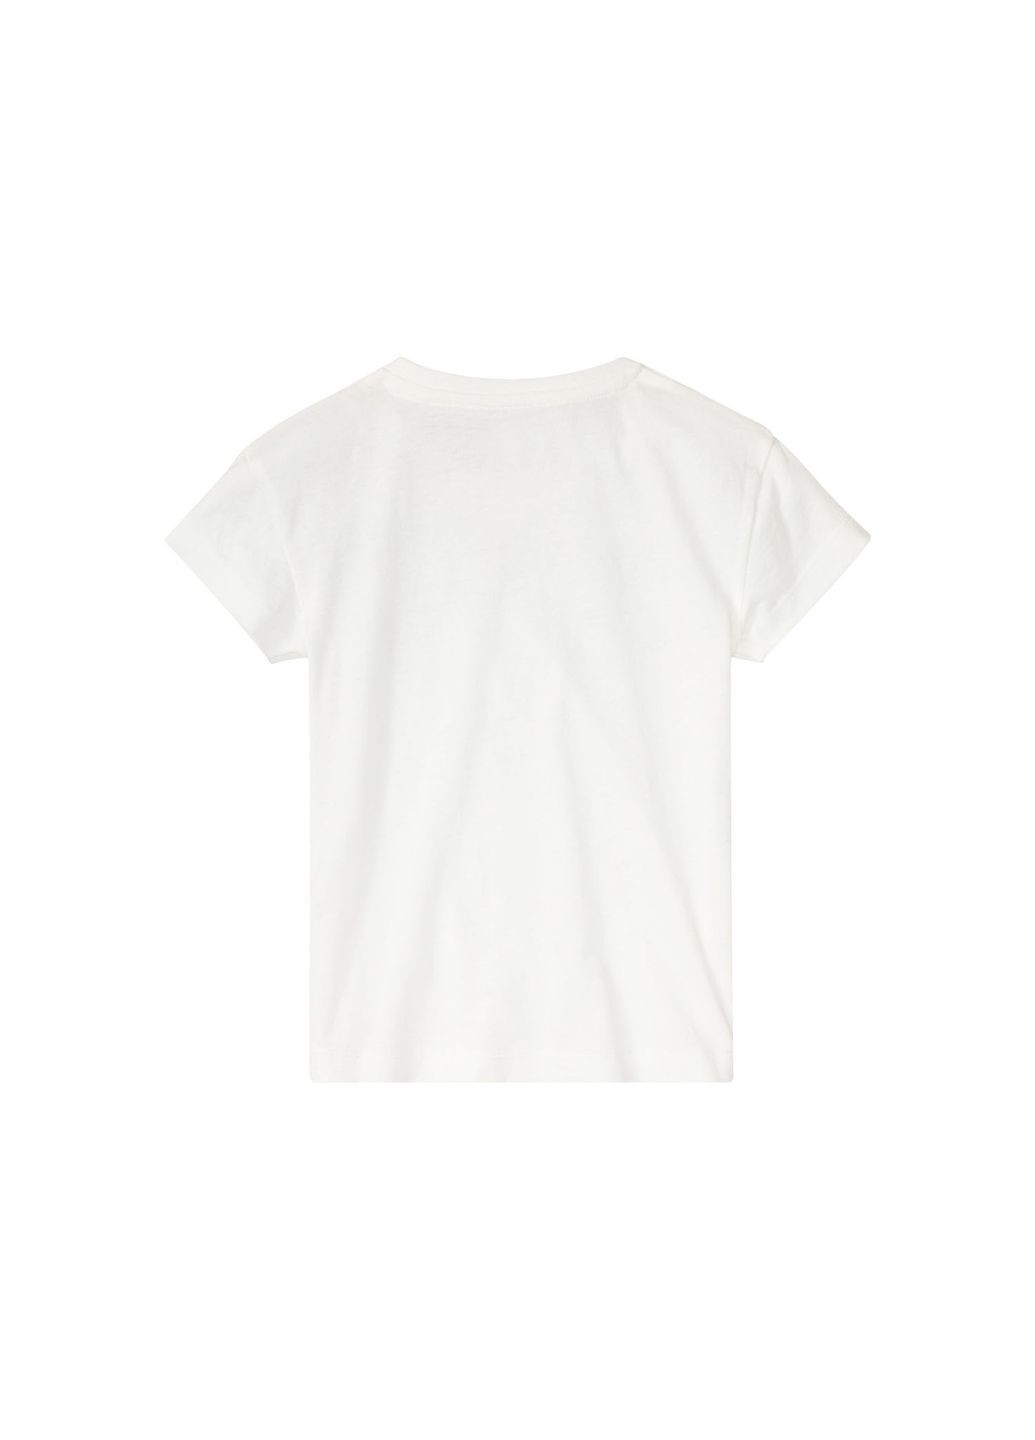 Біла демісезонна футболка бавовняна для дівчинки 400414 білий Lupilu